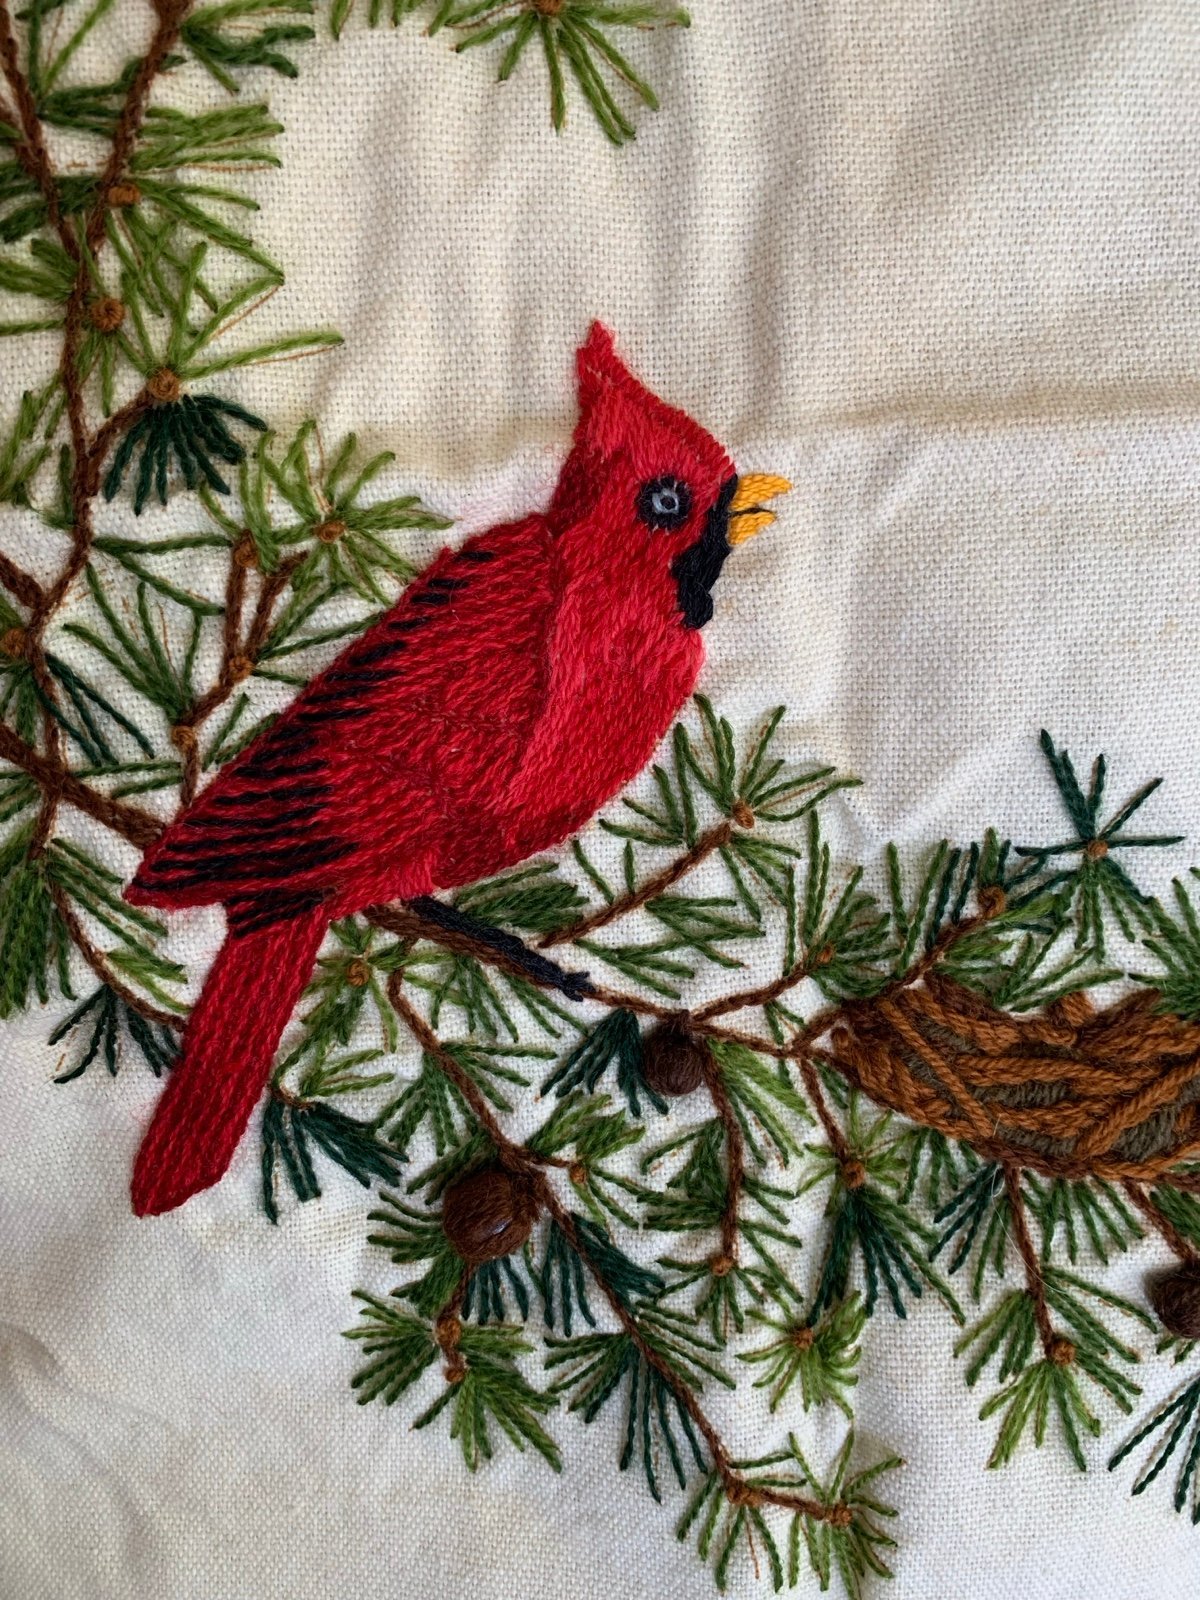 Finished Red Cardinal Bird Needlepoint Embroidered Panel izurXCJBu